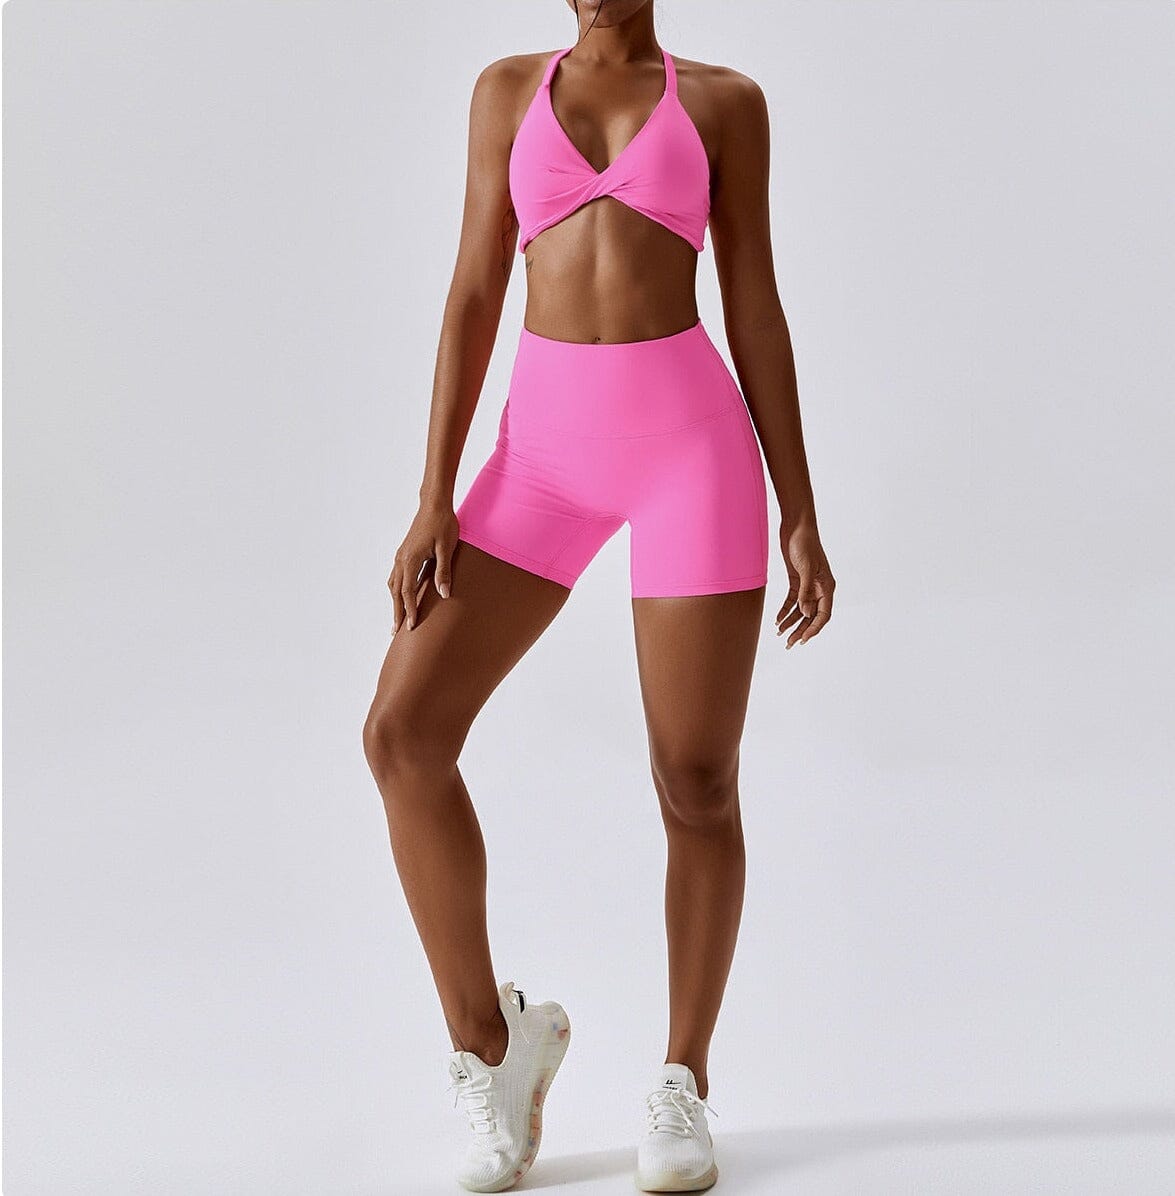 Crest Yoga Set - Shorts + Top Sets Starlethics Pink Shorts Set S 